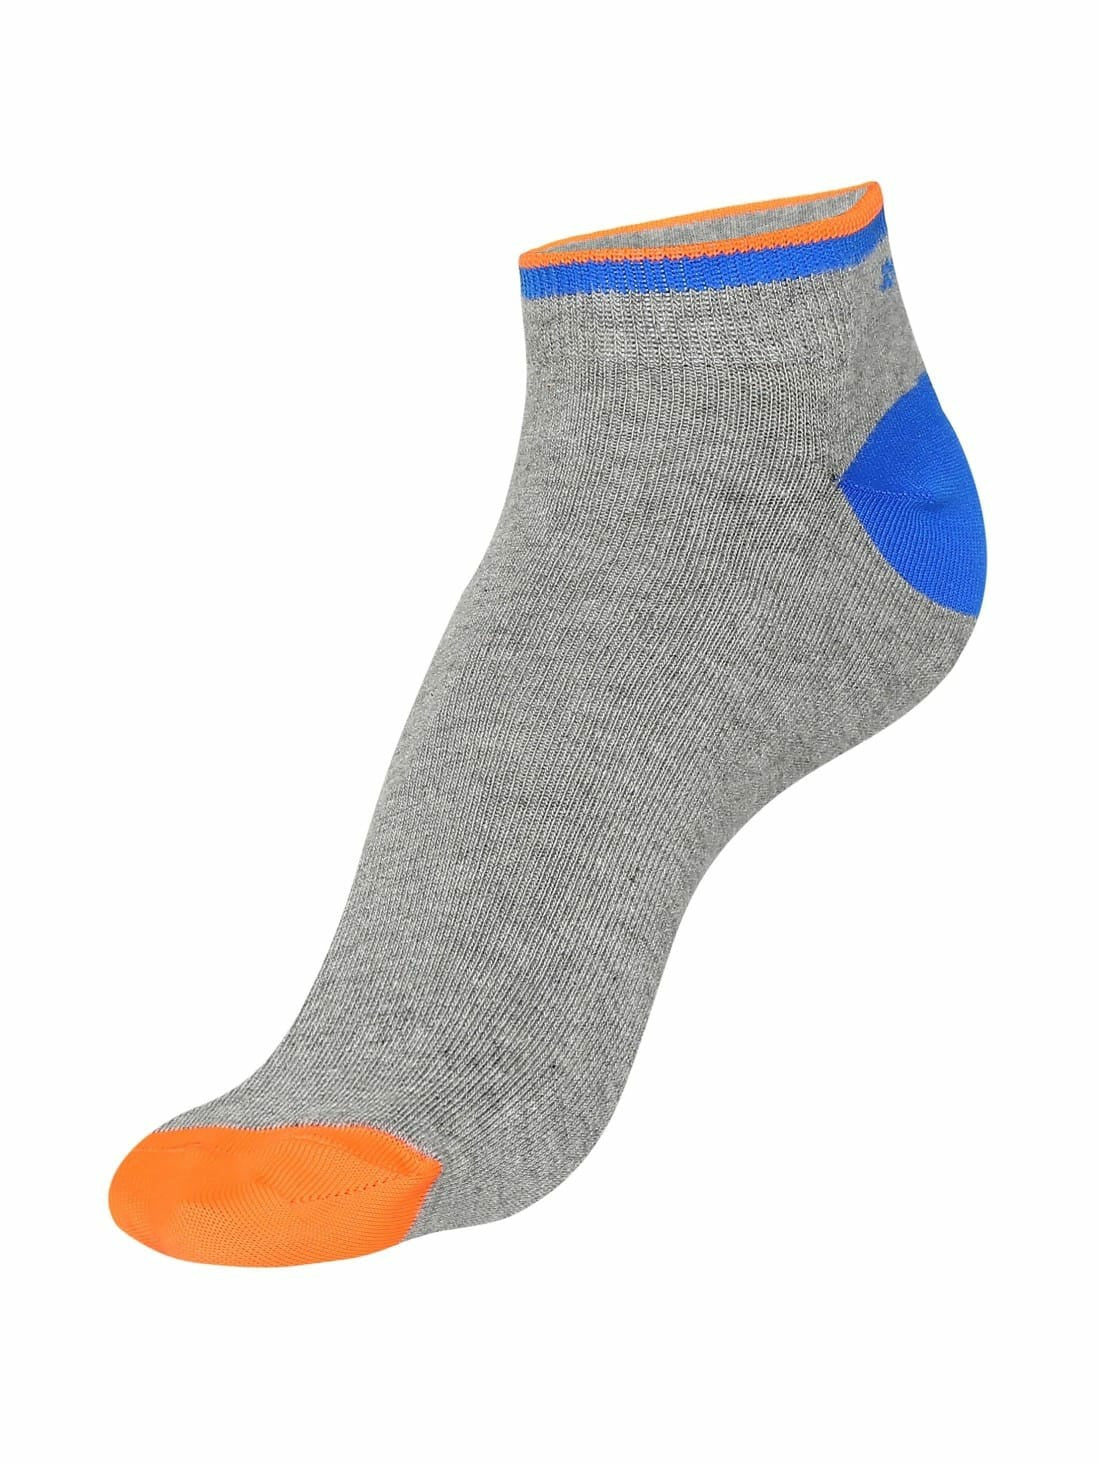 Men's Assorted Low Show Socks